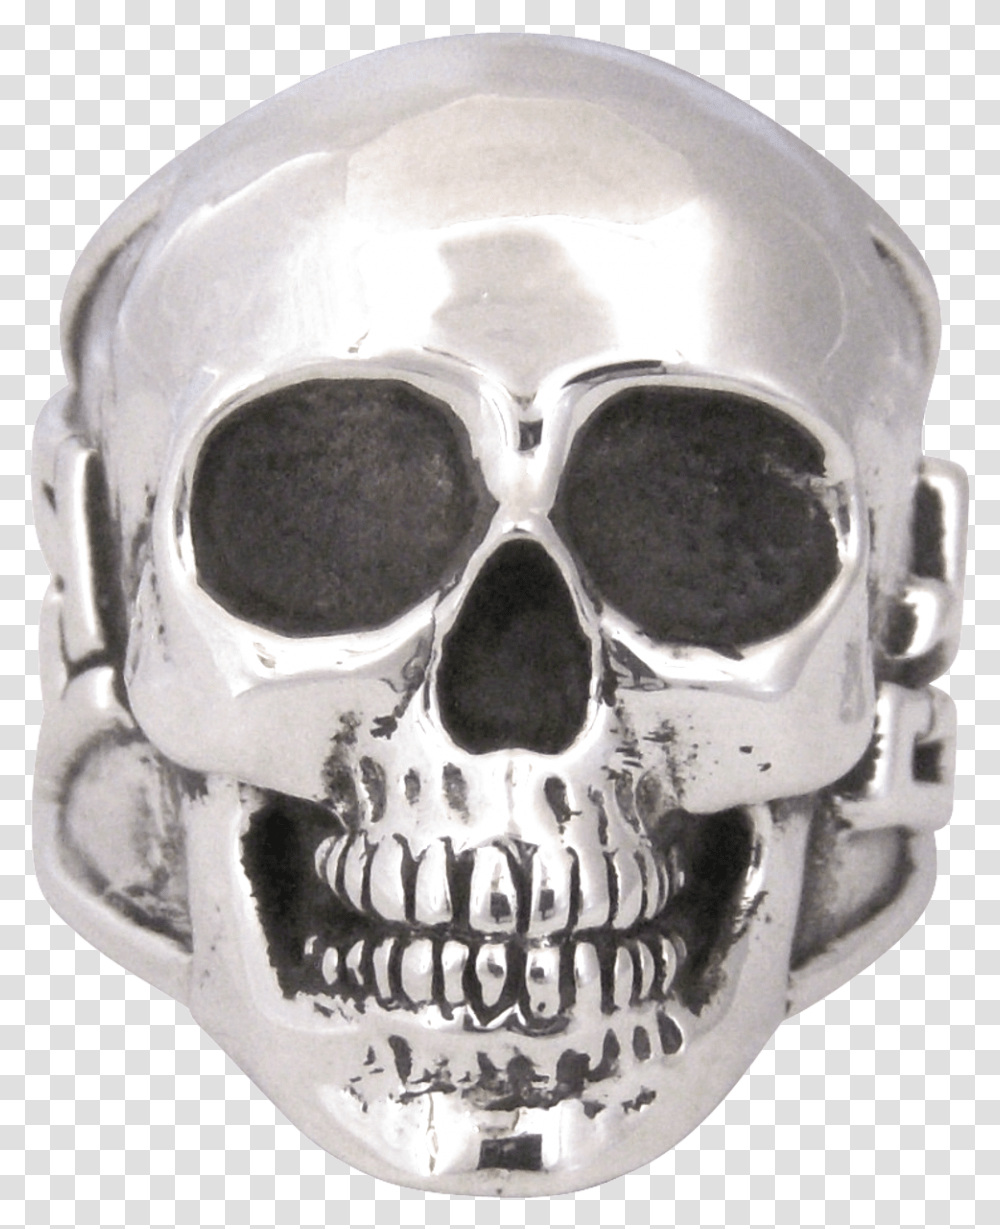 Skull, Helmet, Apparel, Sunglasses Transparent Png